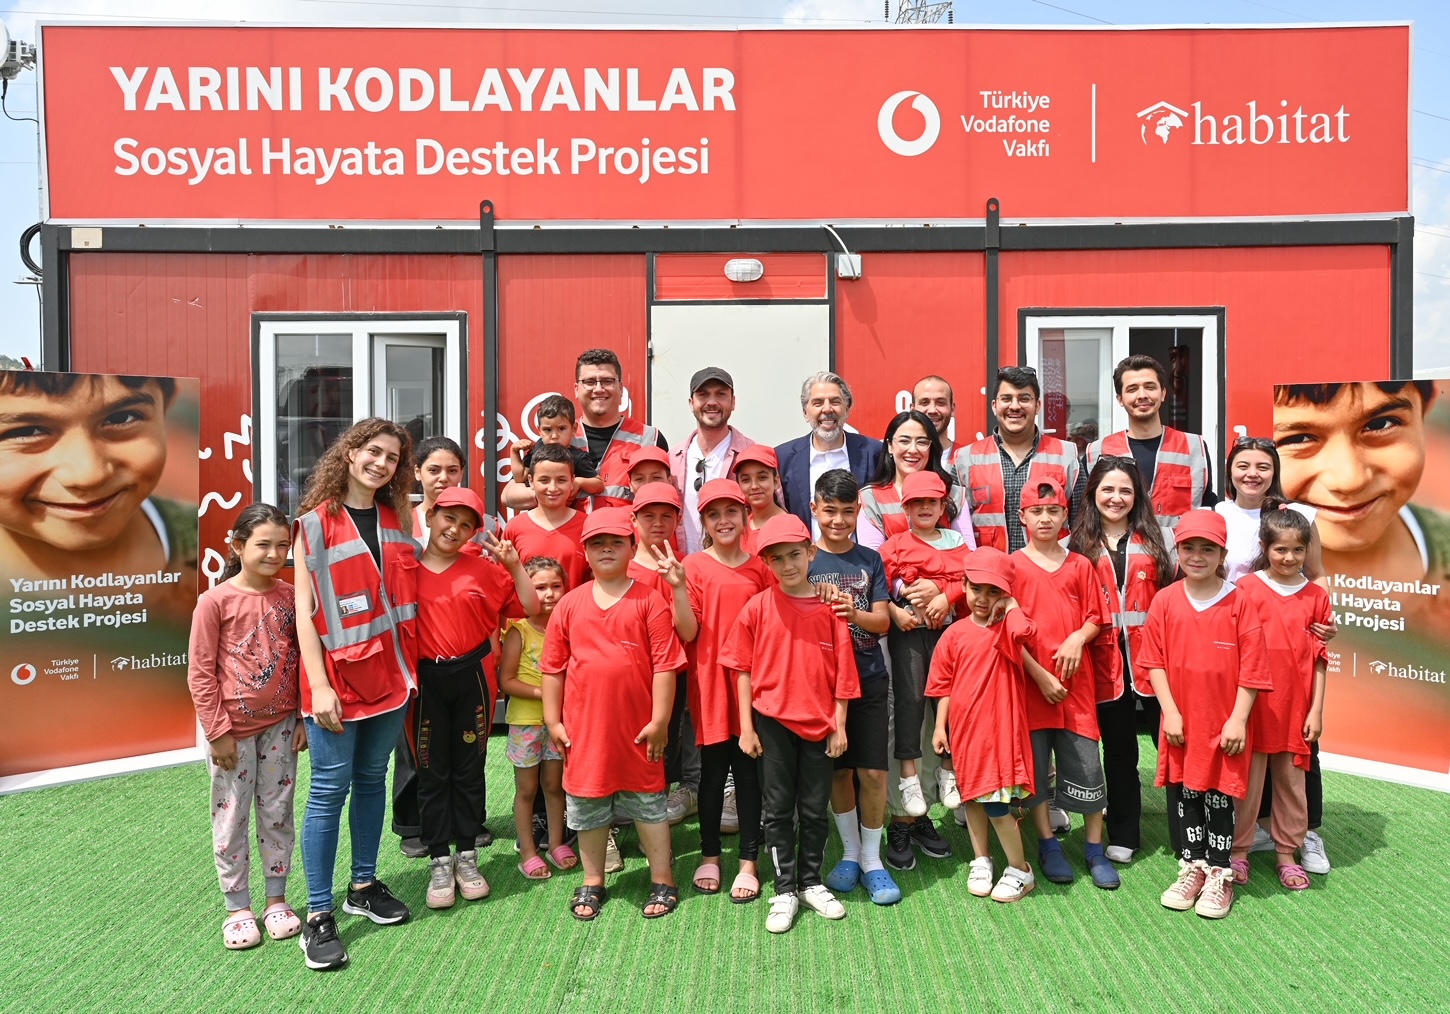 Yarını Kodlayanlar Sosyal Hayata Destek projesinde ikinci konteyner teknoloji sınıfı Kahramanmaraş’ta açıldı